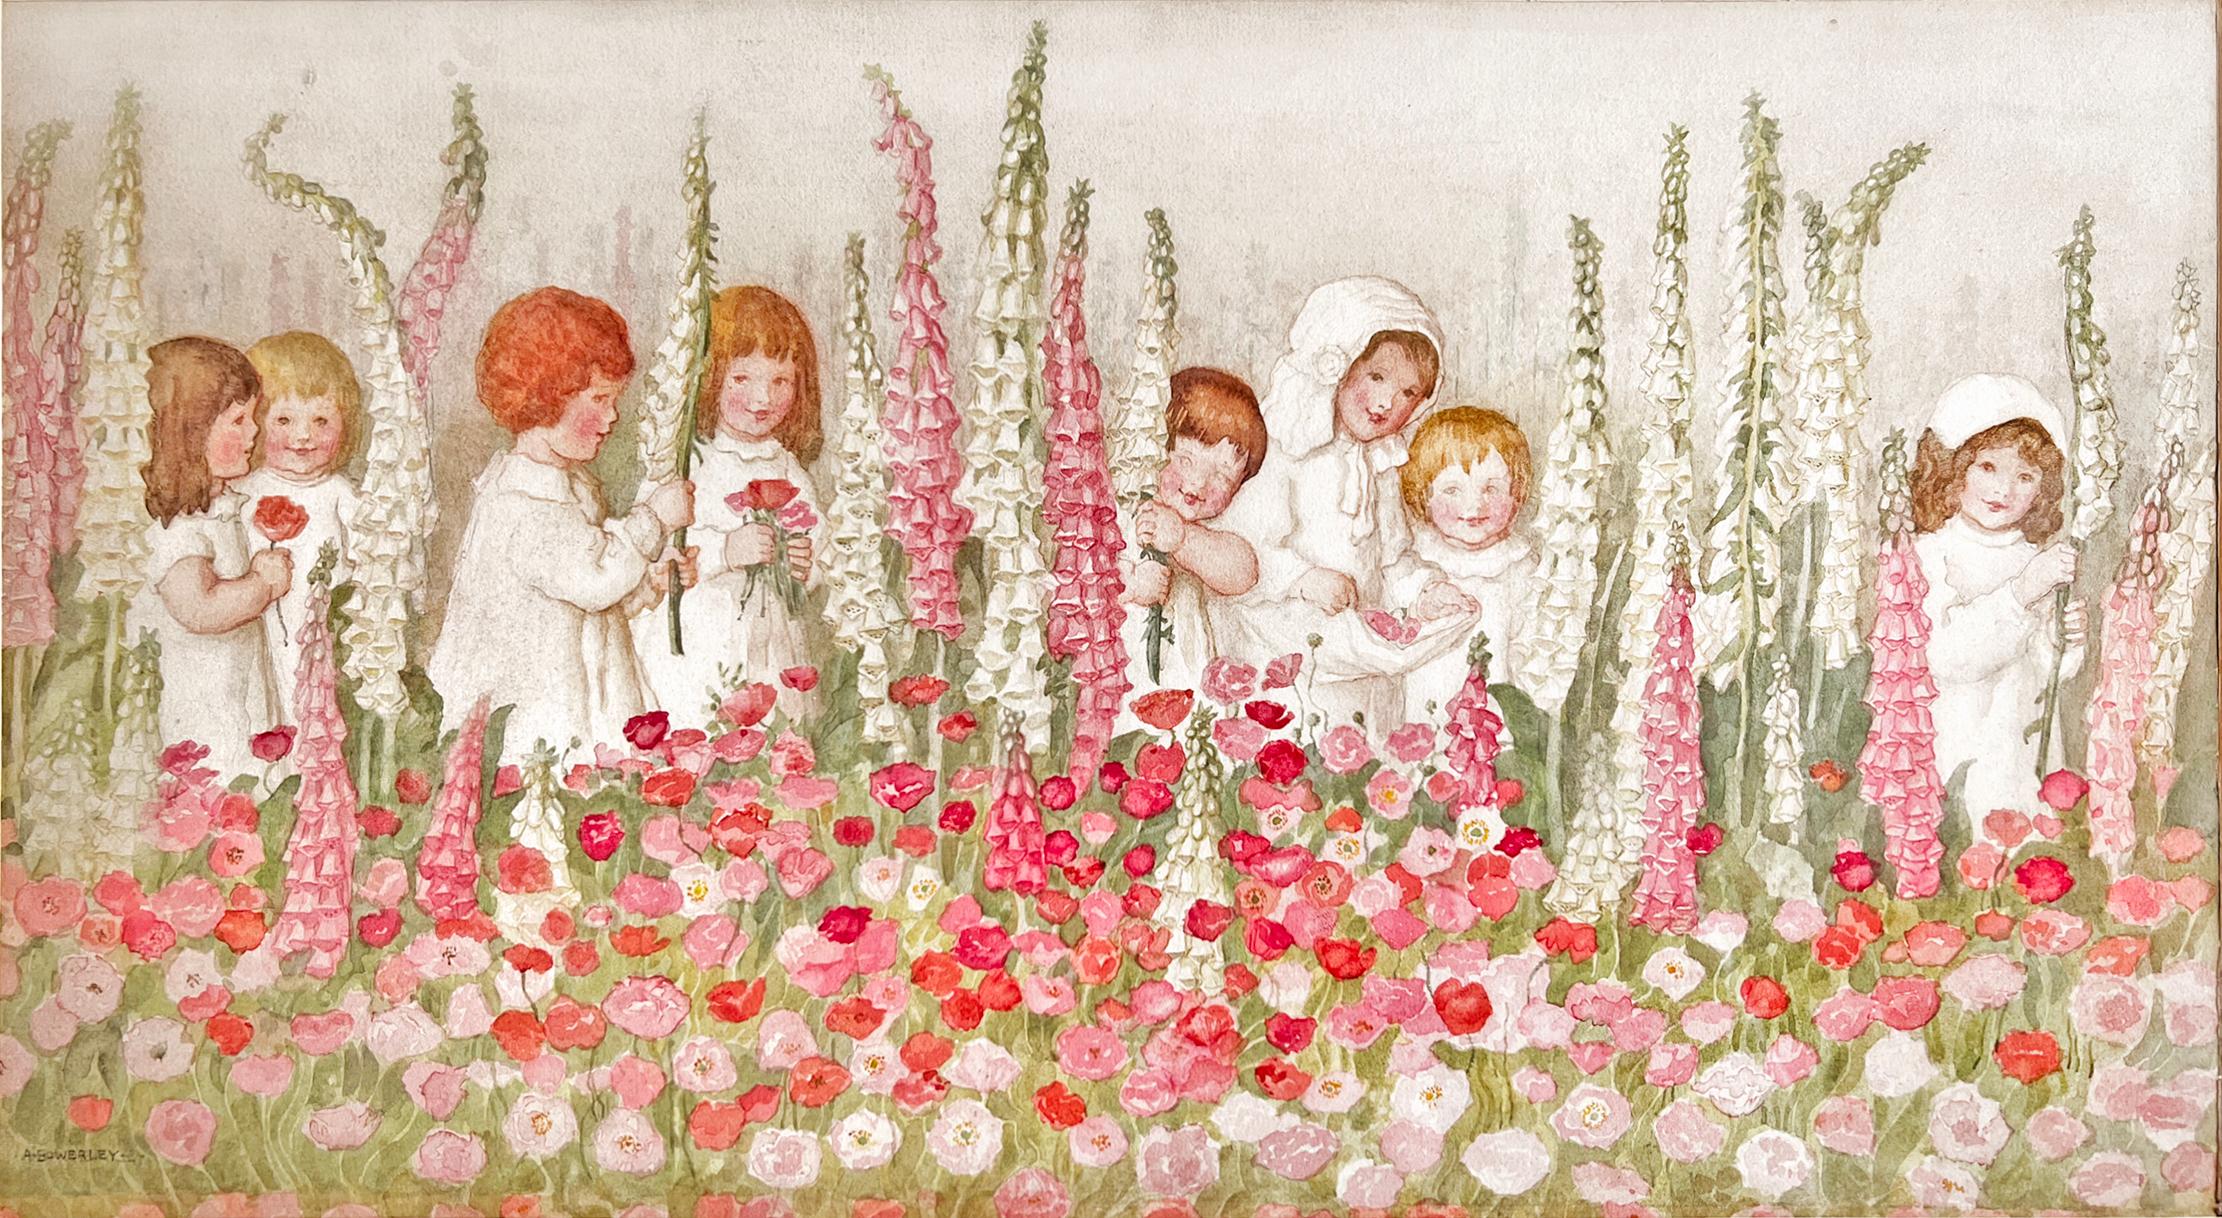 Kinder mit Fuchspelzen - Rosa Blumen, weibliche Illustratorin des Goldenen Zeitalters